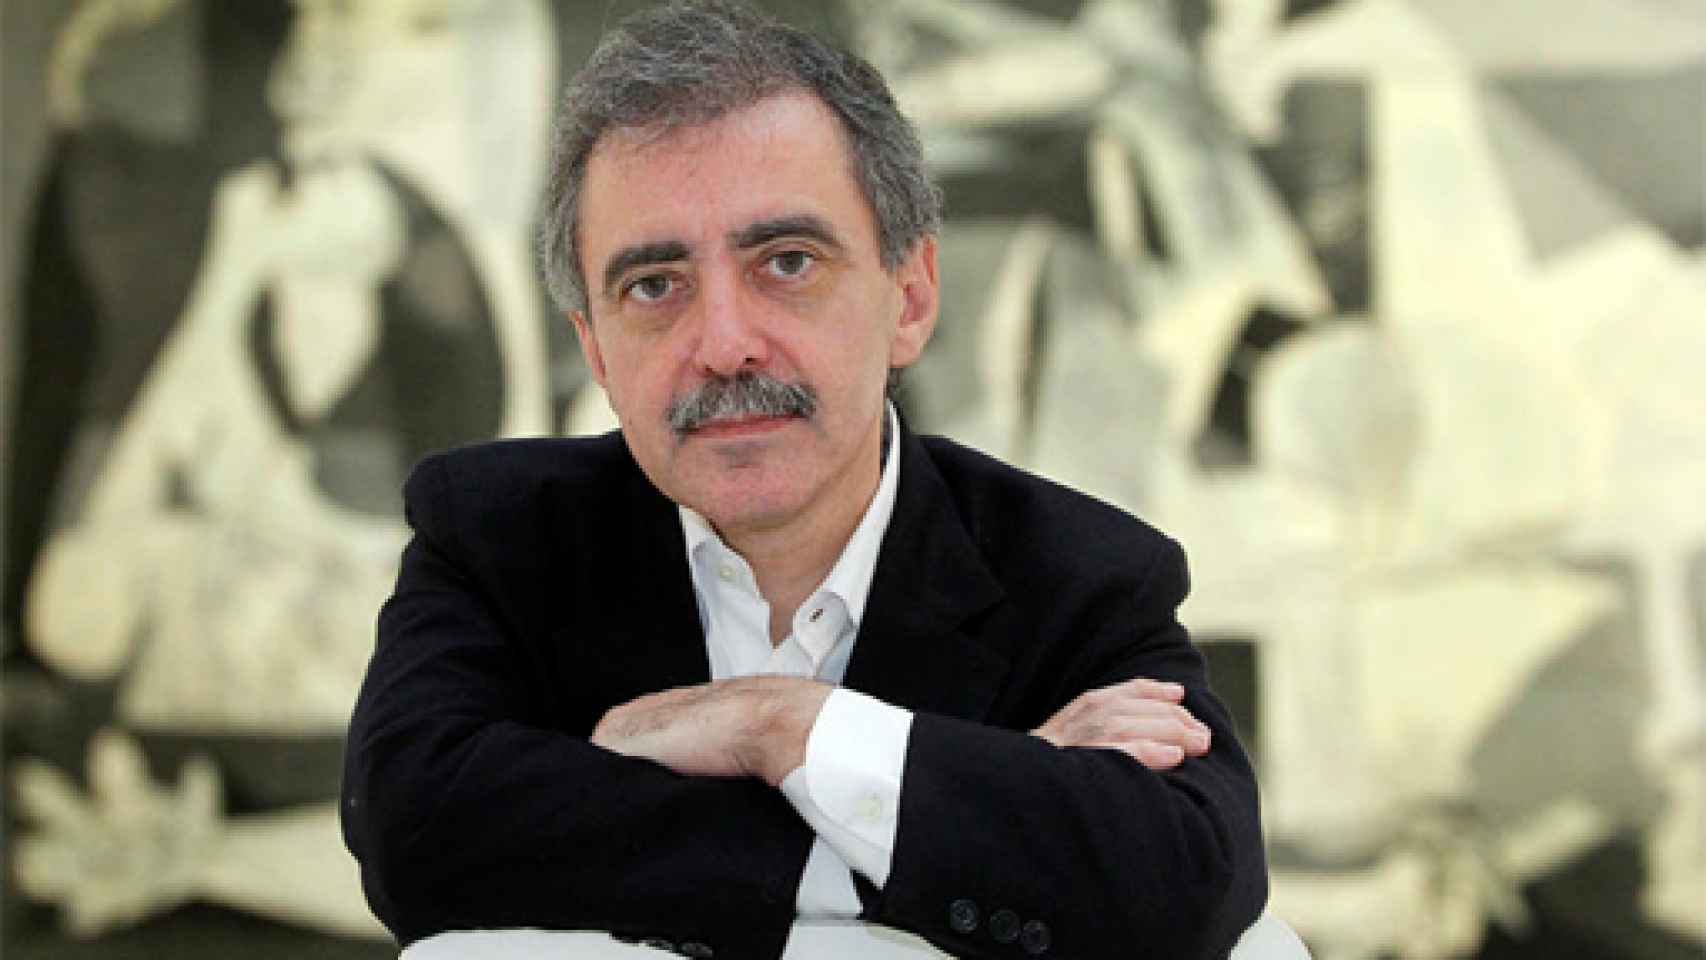 Image: Manuel Borja-Villel, presidente del jurado de la Bienal de Venecia